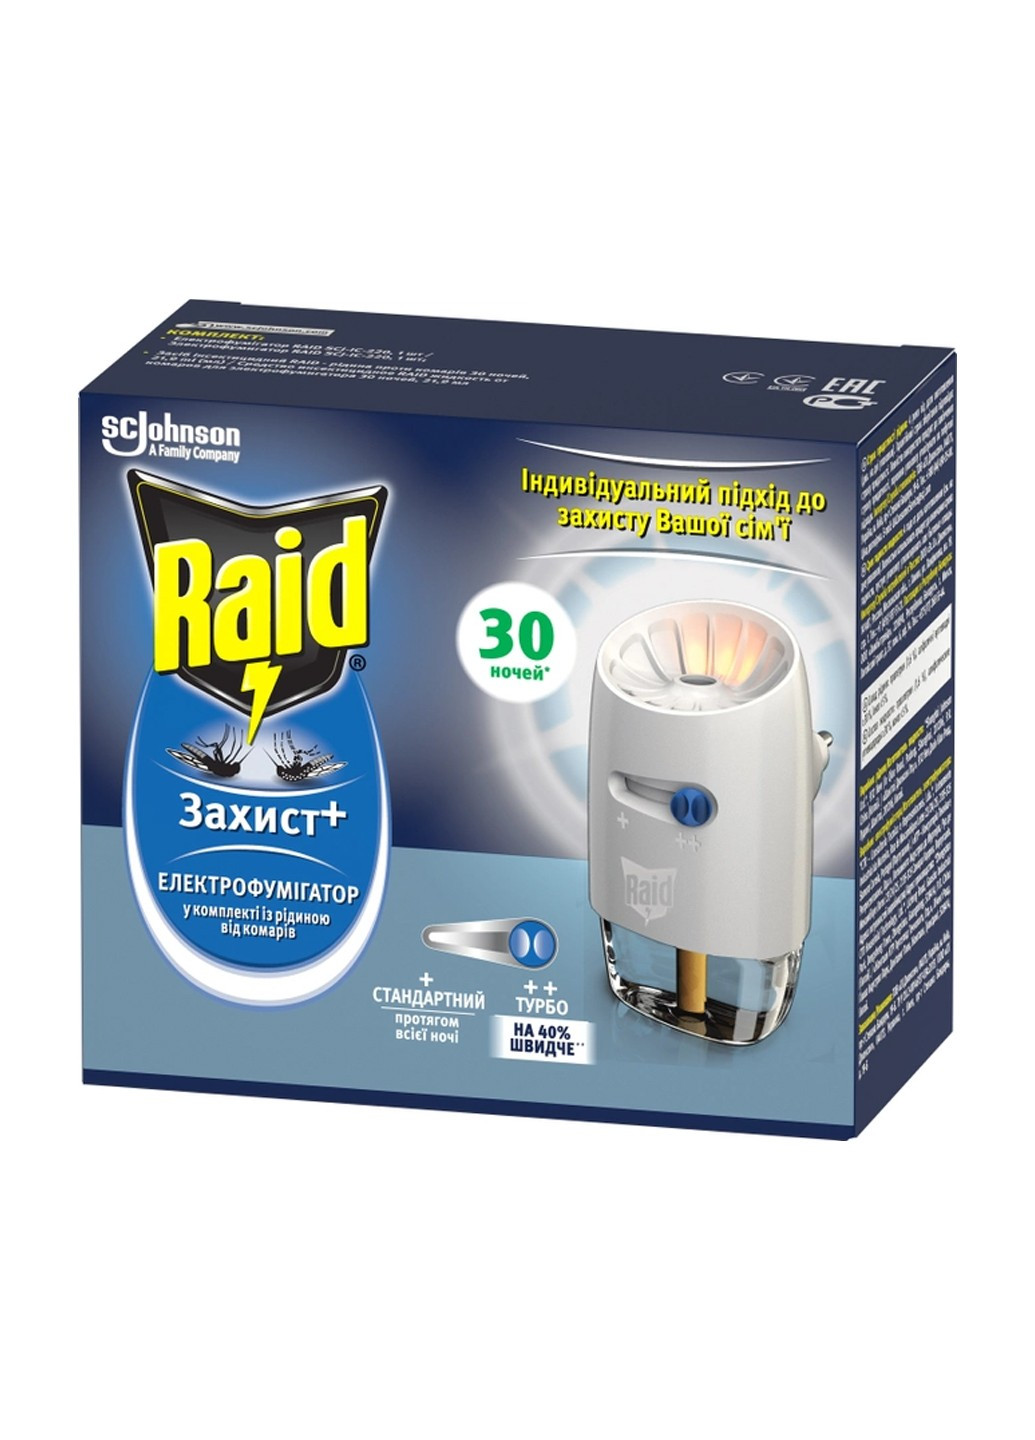 Электрофумигатор Защита+ с жидкостью против комаров и регулятором интенсивности 30 ночей Raid (264920216)